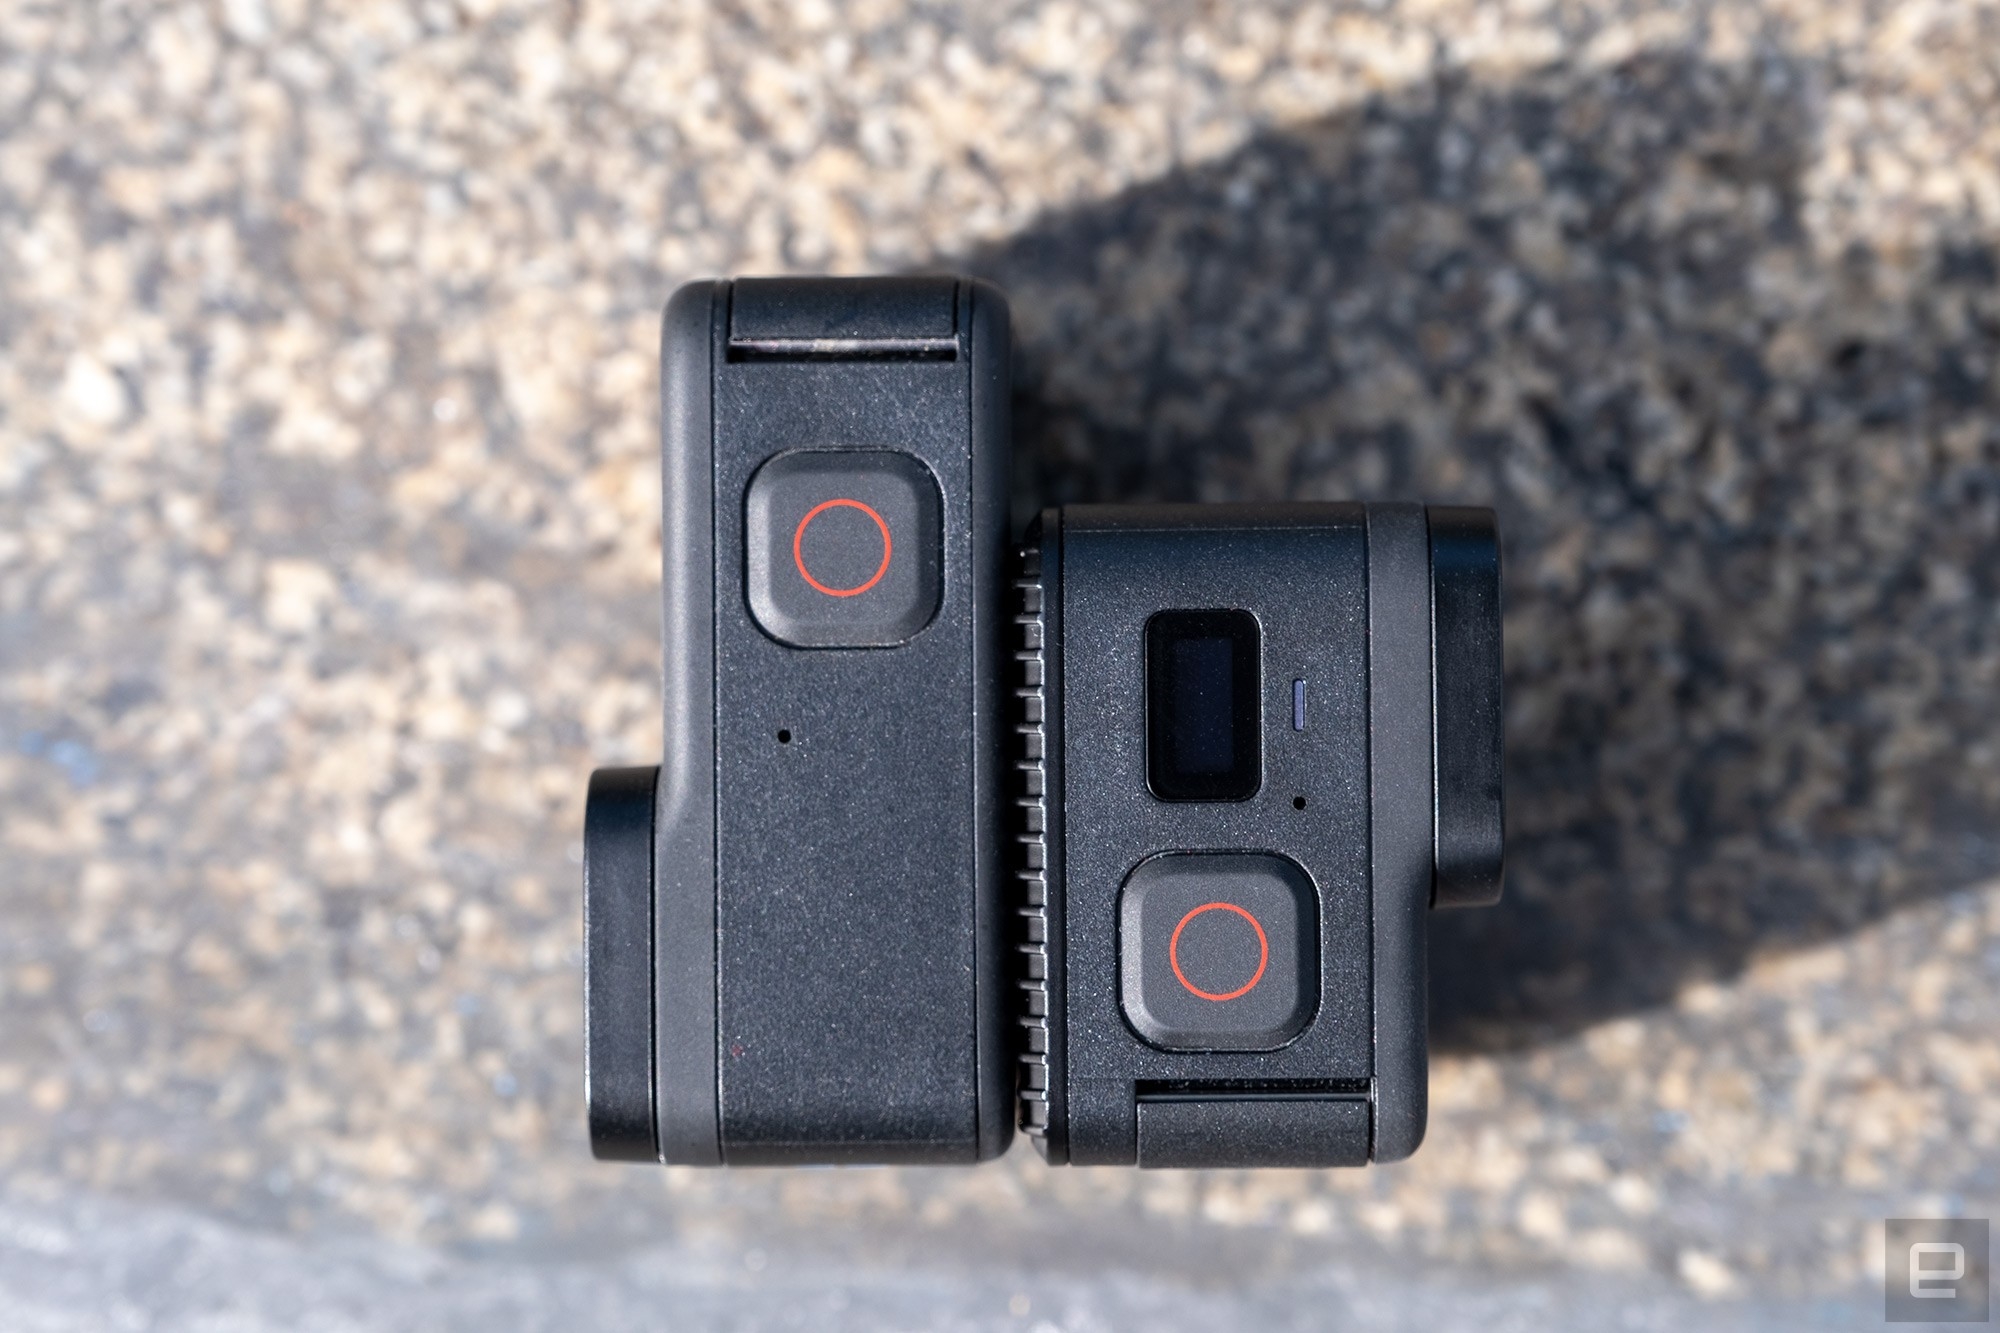 GoPro's Hero 11 Black Mini fills a small niche